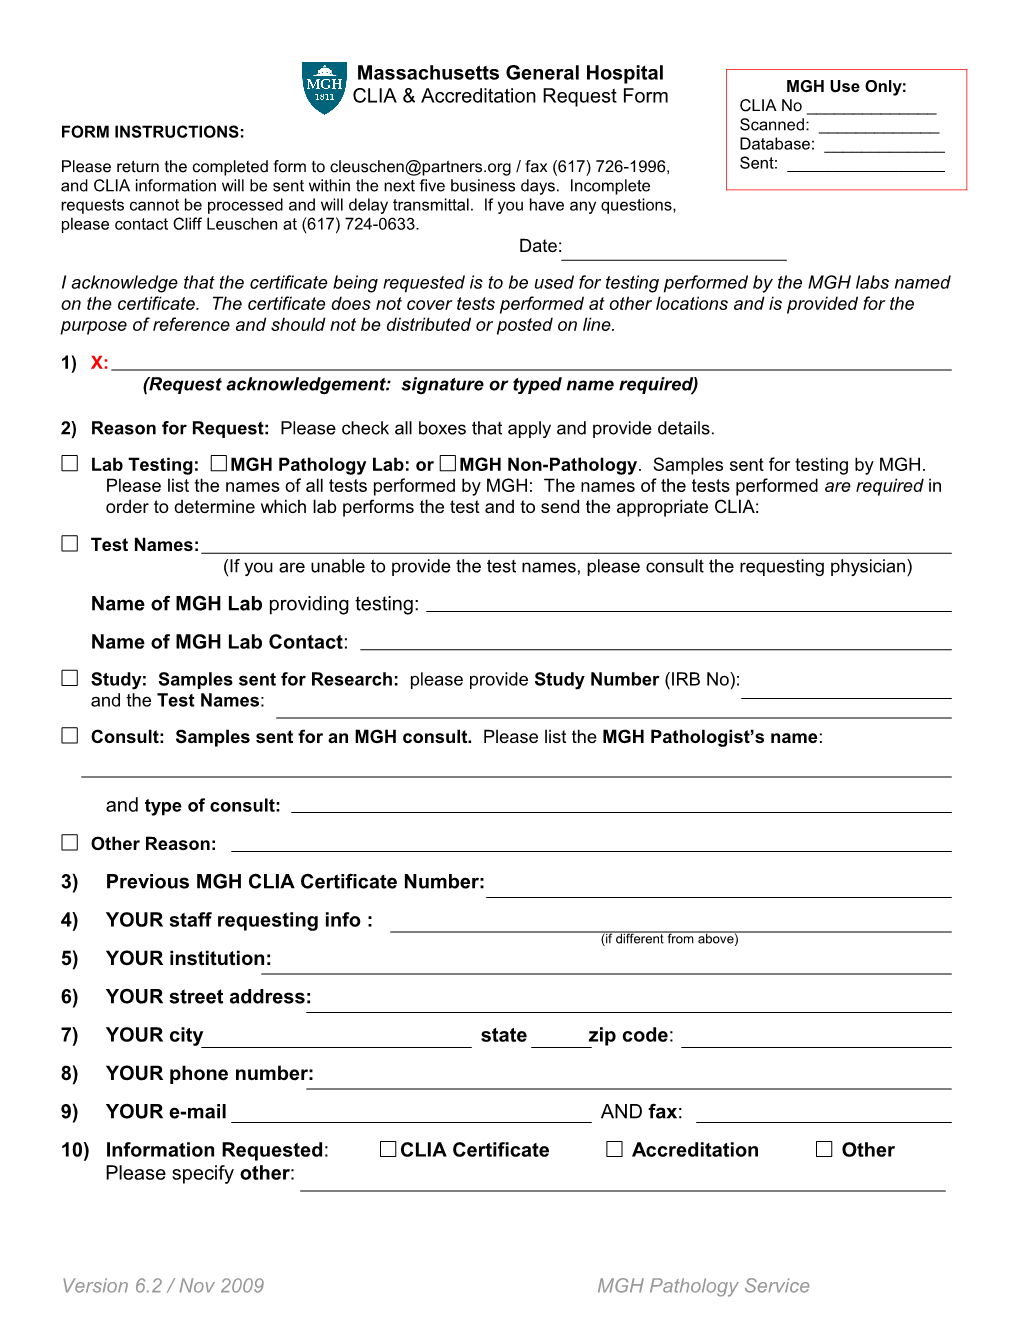 CLIA & Accreditation Request Form